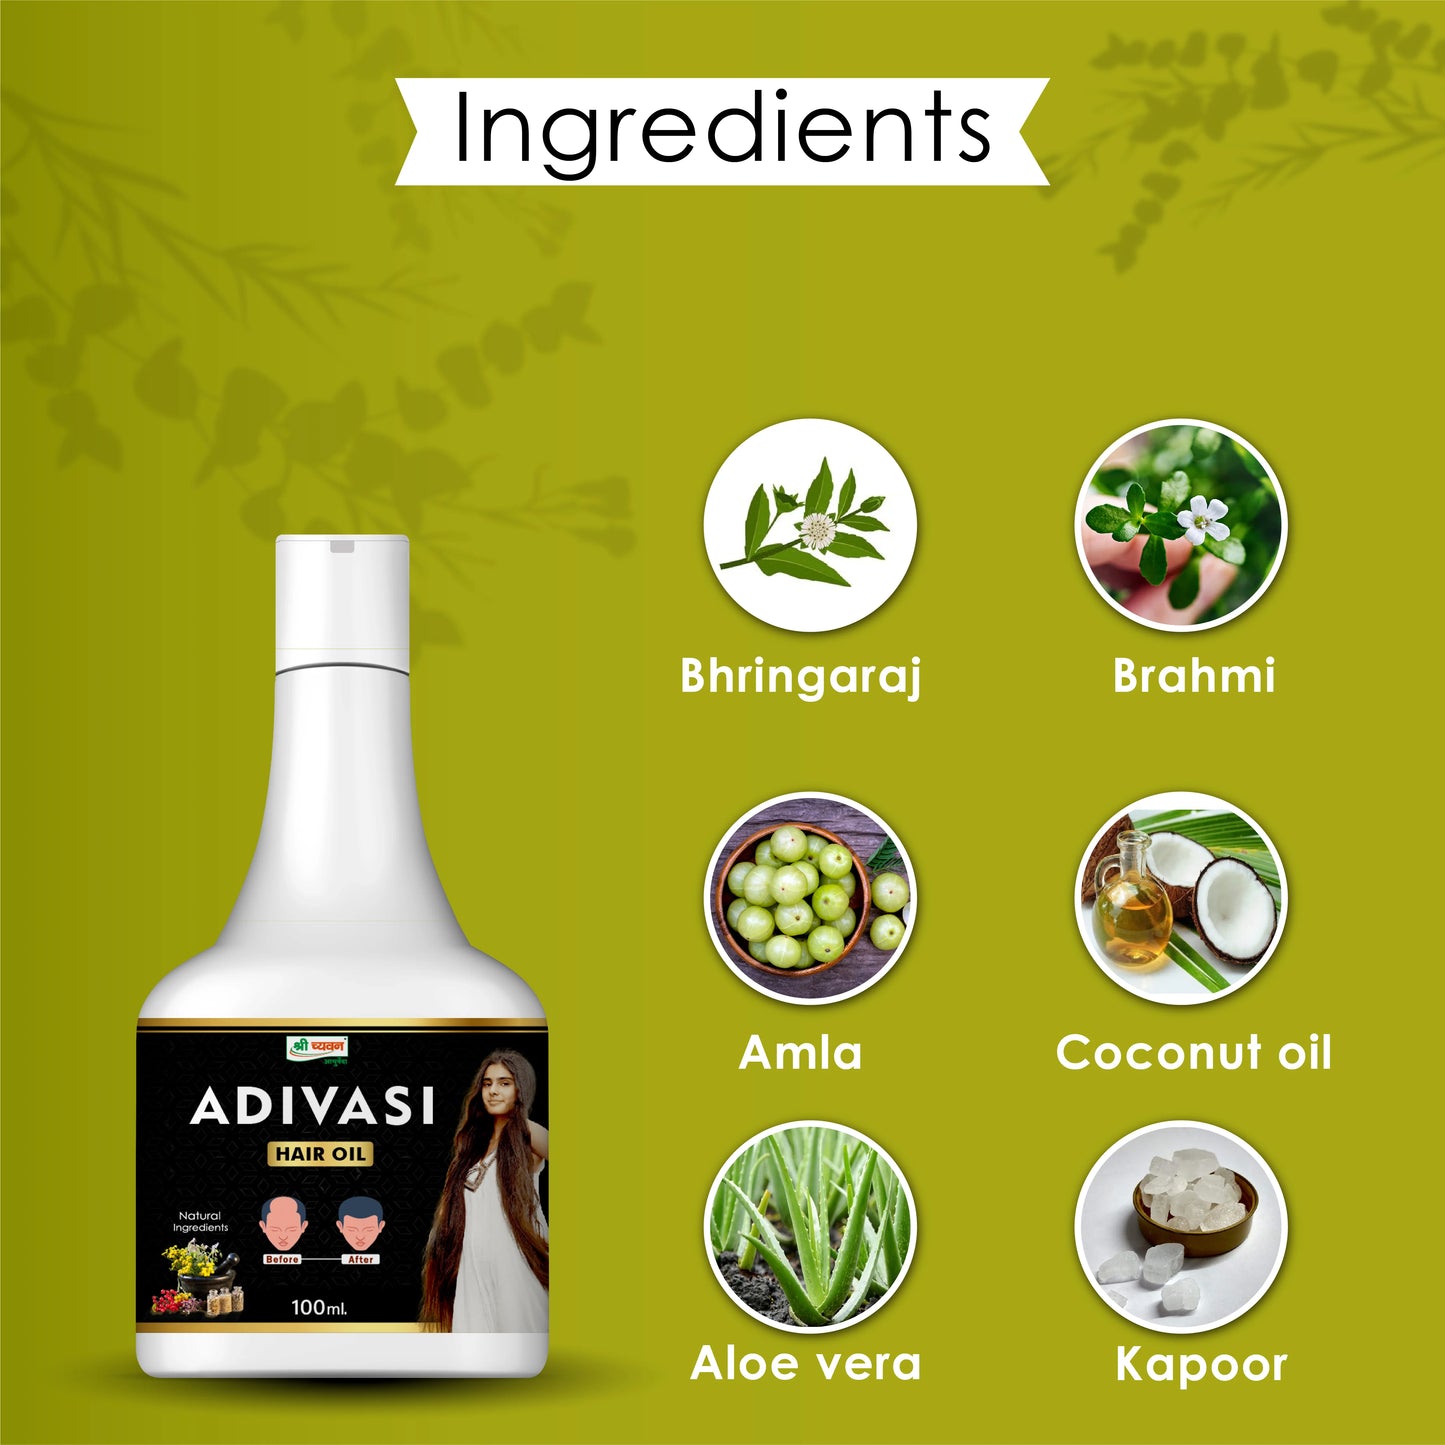 adivasi hair oil for vibrant hair